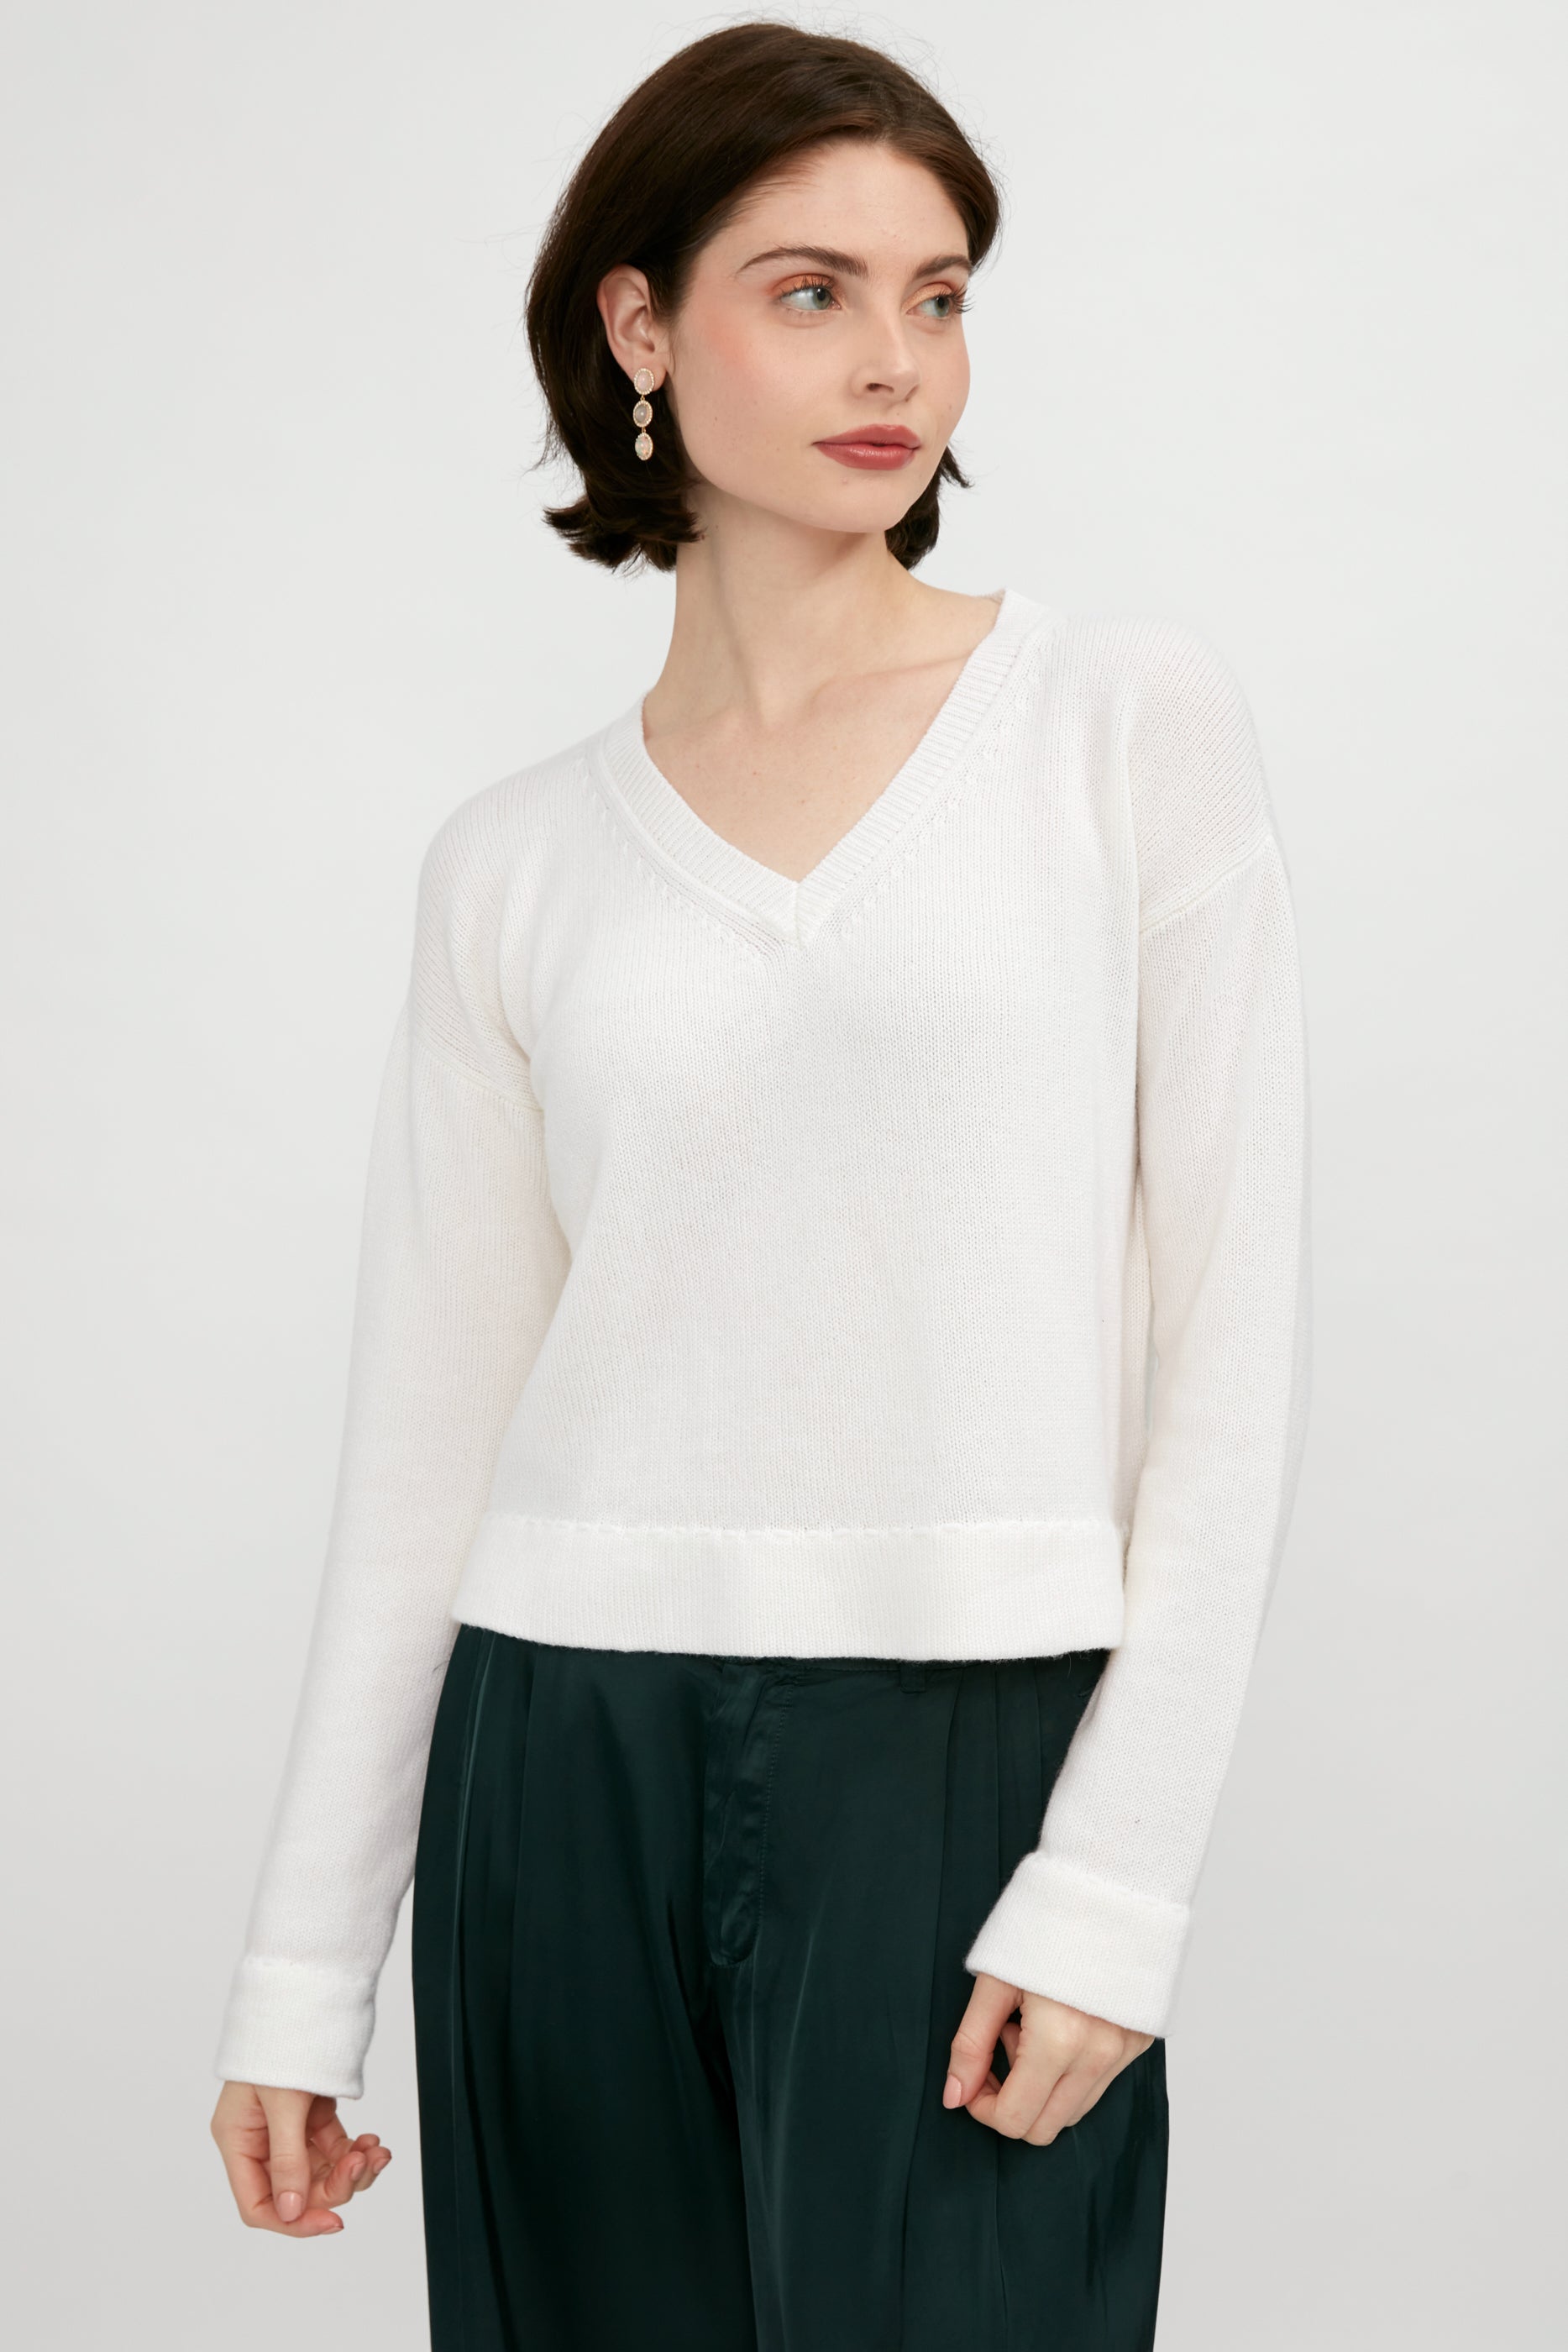 PRIVATE 0204 Cashmere Hand-Stitch V-Neck Sweater in White